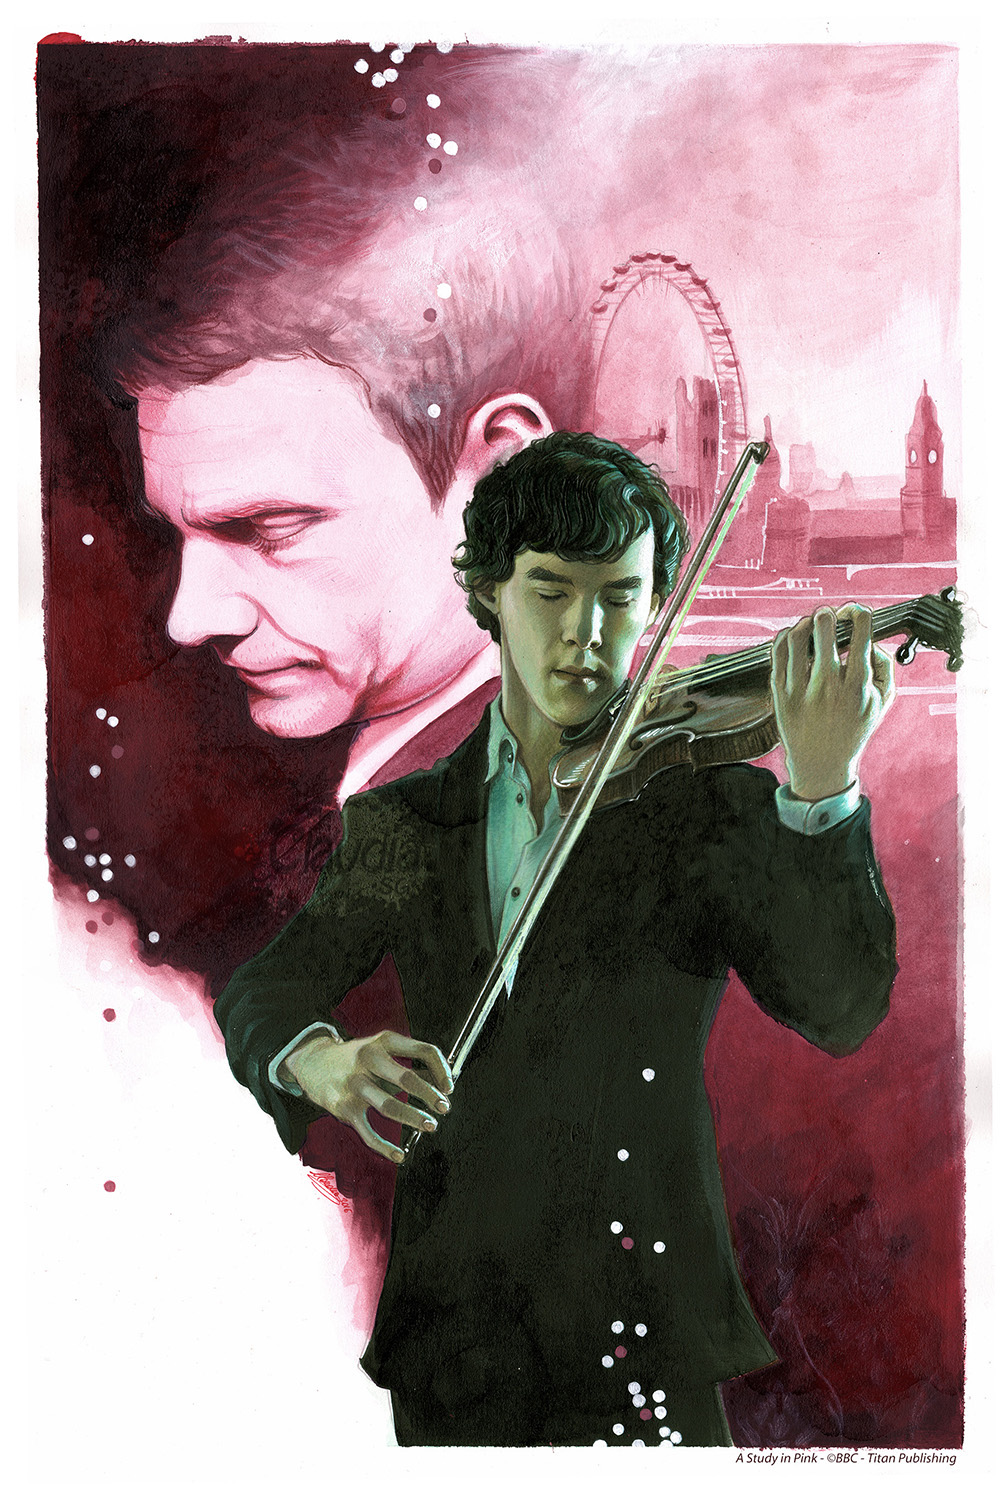 Sherlock titan publishing Variant Cover Sherlock Holmes manga comic